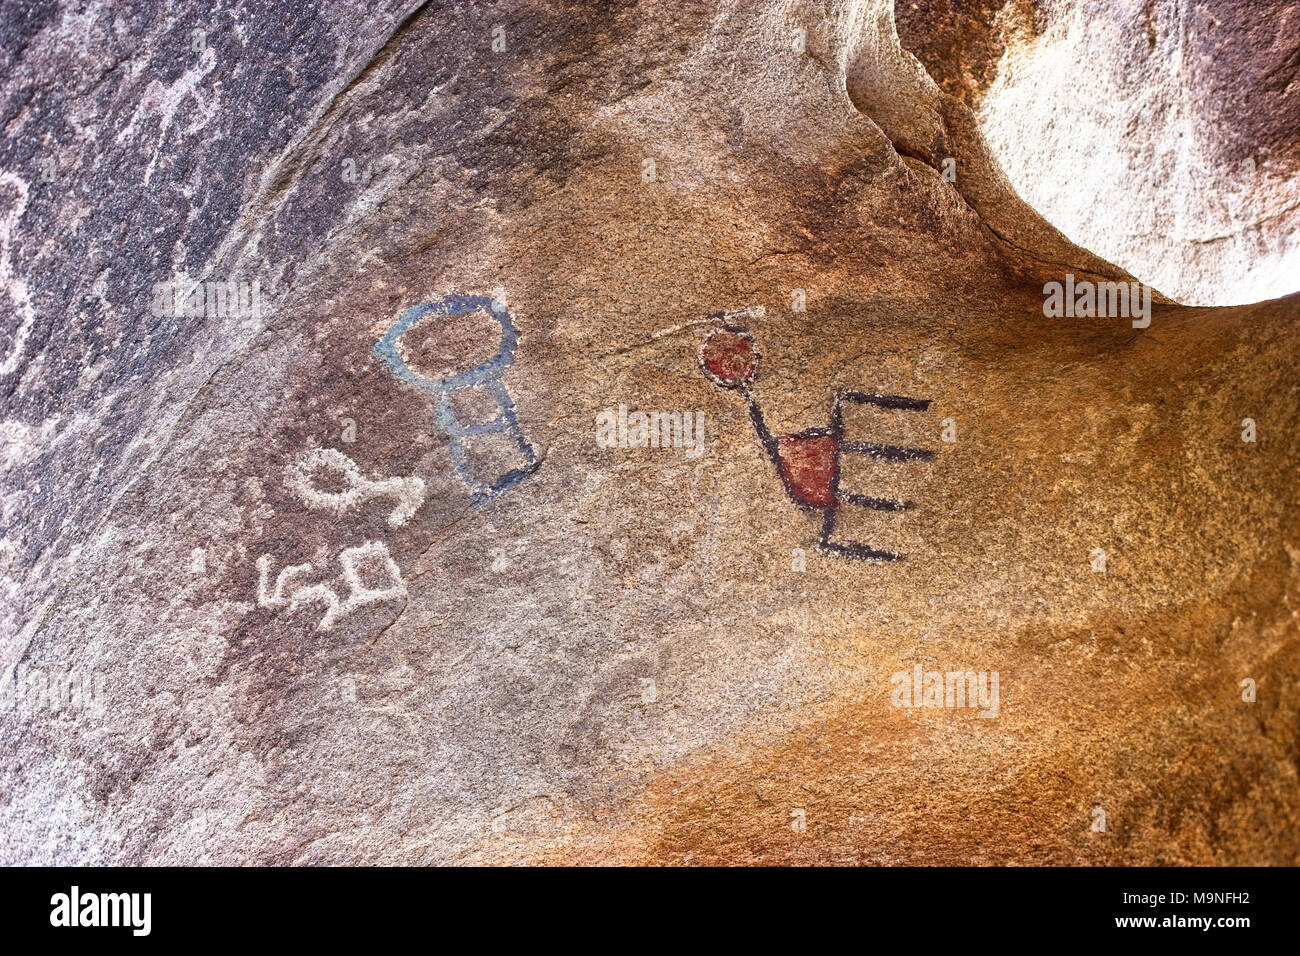 Einzigartige Indianische Felszeichnungen in Höhlen in Joshua Tree National Park im südlichen Kalifornien USA gefunden Stockfoto